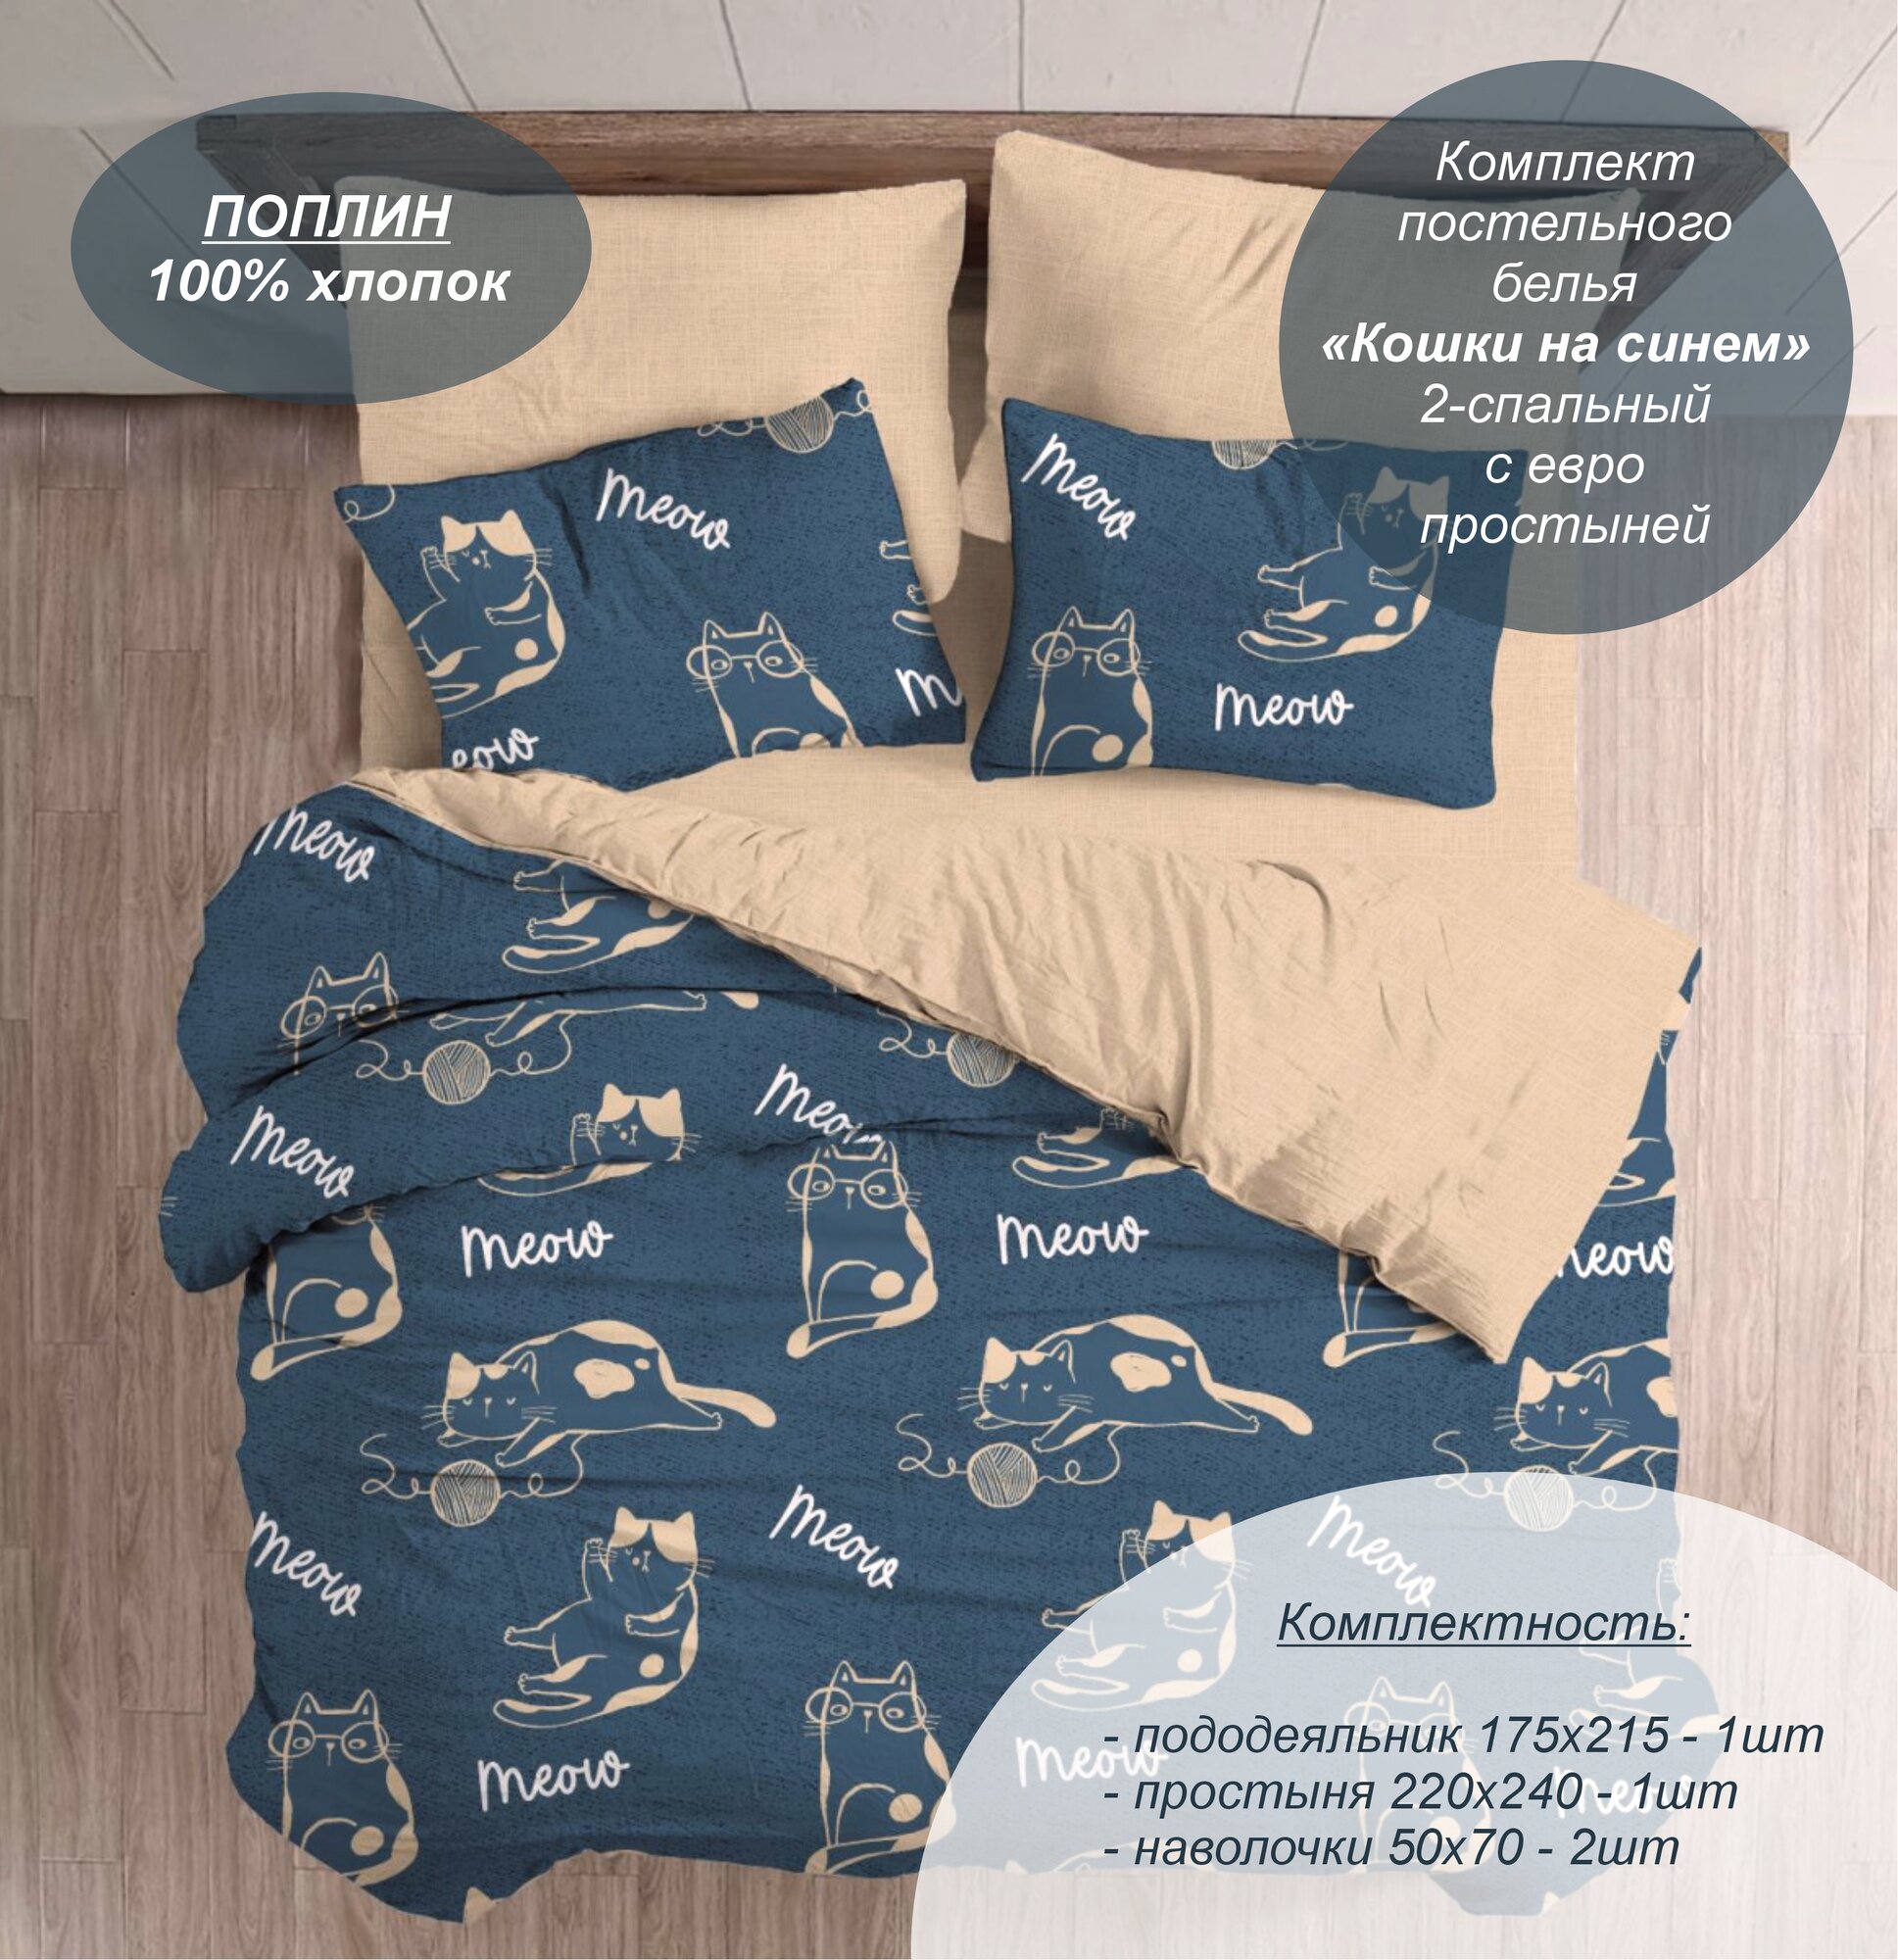 Комплект постельного белья "Кошки на синем" 2-спальный с евро простыней (Поплин, 100% хлопок) наволочки 50х70